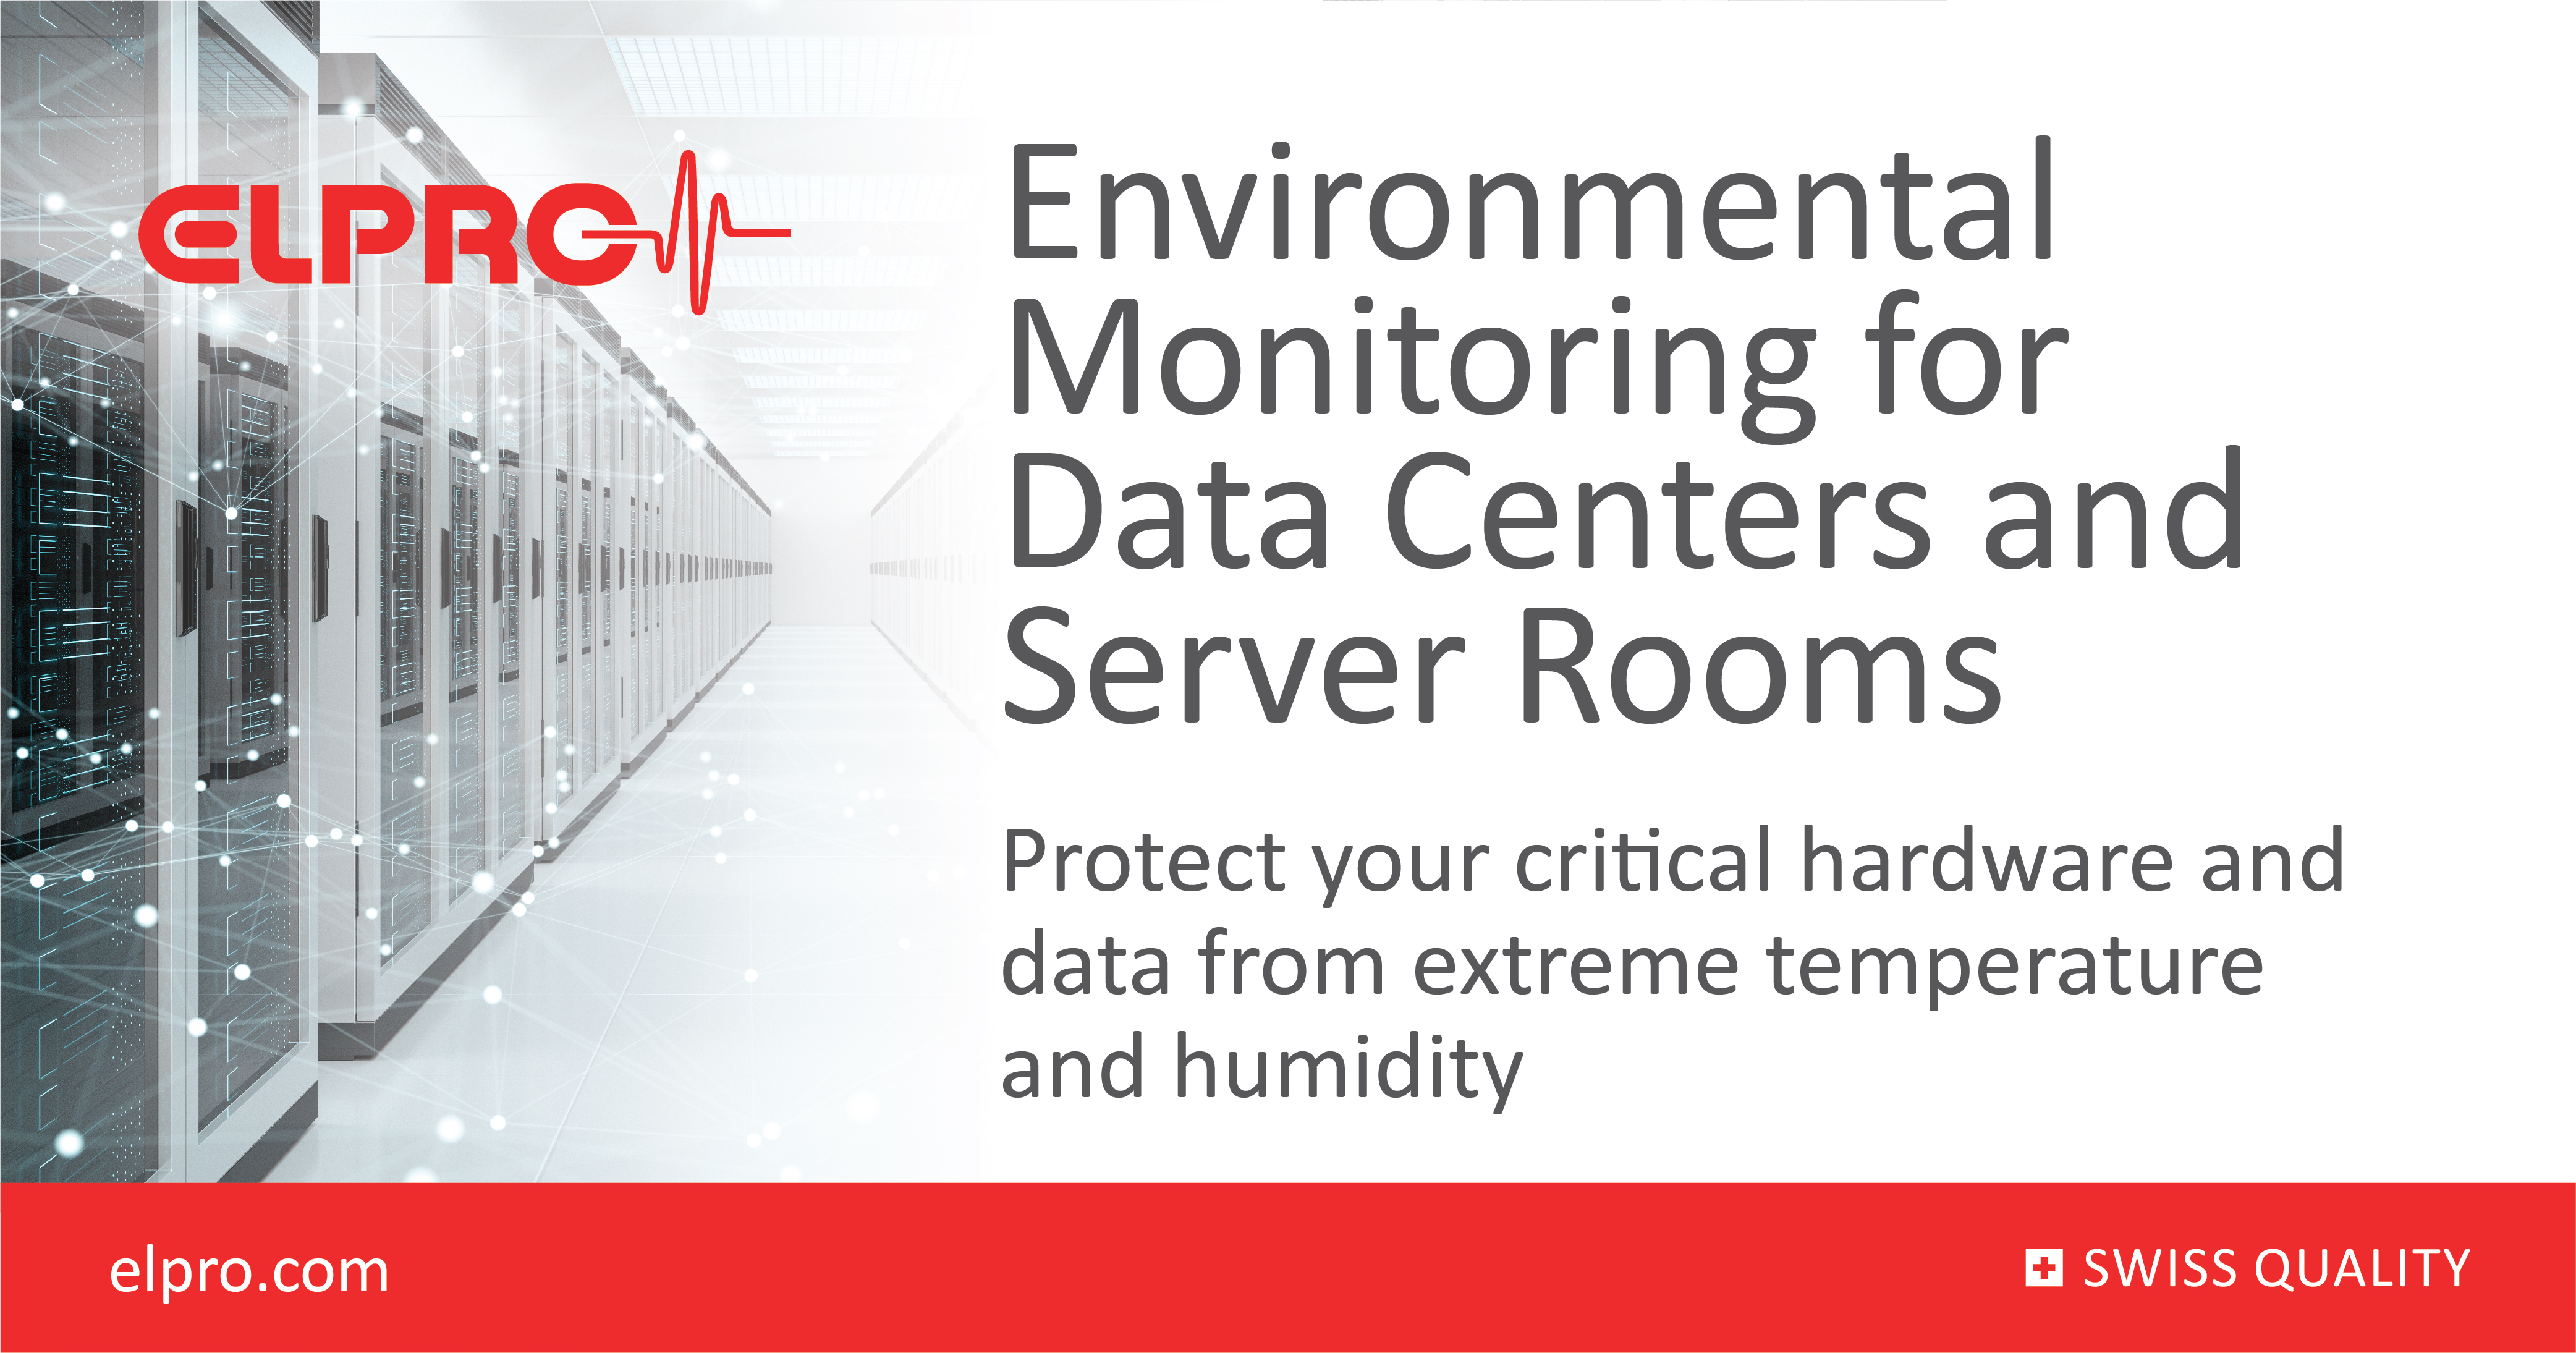 Server Room Temperature Alarm, IT Infrastructure & Data Centers